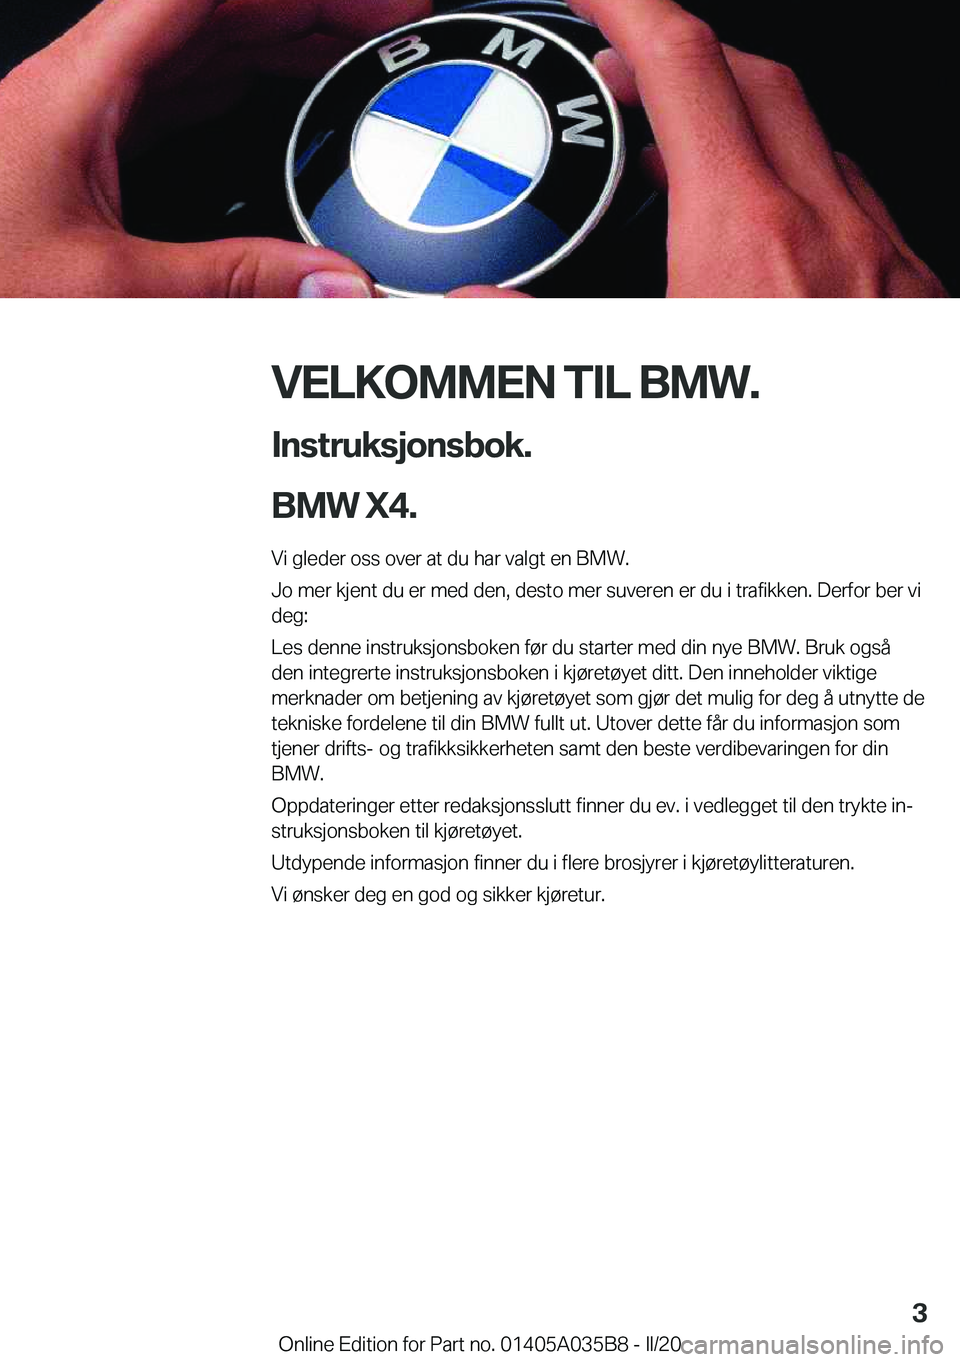 BMW X4 2020  InstruksjonsbØker (in Norwegian) �V�E�L�K�O�M�M�E�N��T�I�L��B�M�W�.�I�n�s�t�r�u�k�s�j�o�n�s�b�o�k�.
�B�M�W��X�4�.
�V�i��g�l�e�d�e�r��o�s�s��o�v�e�r��a�t��d�u��h�a�r��v�a�l�g�t��e�n��B�M�W�.
�J�o��m�e�r��k�j�e�n�t��d�u�